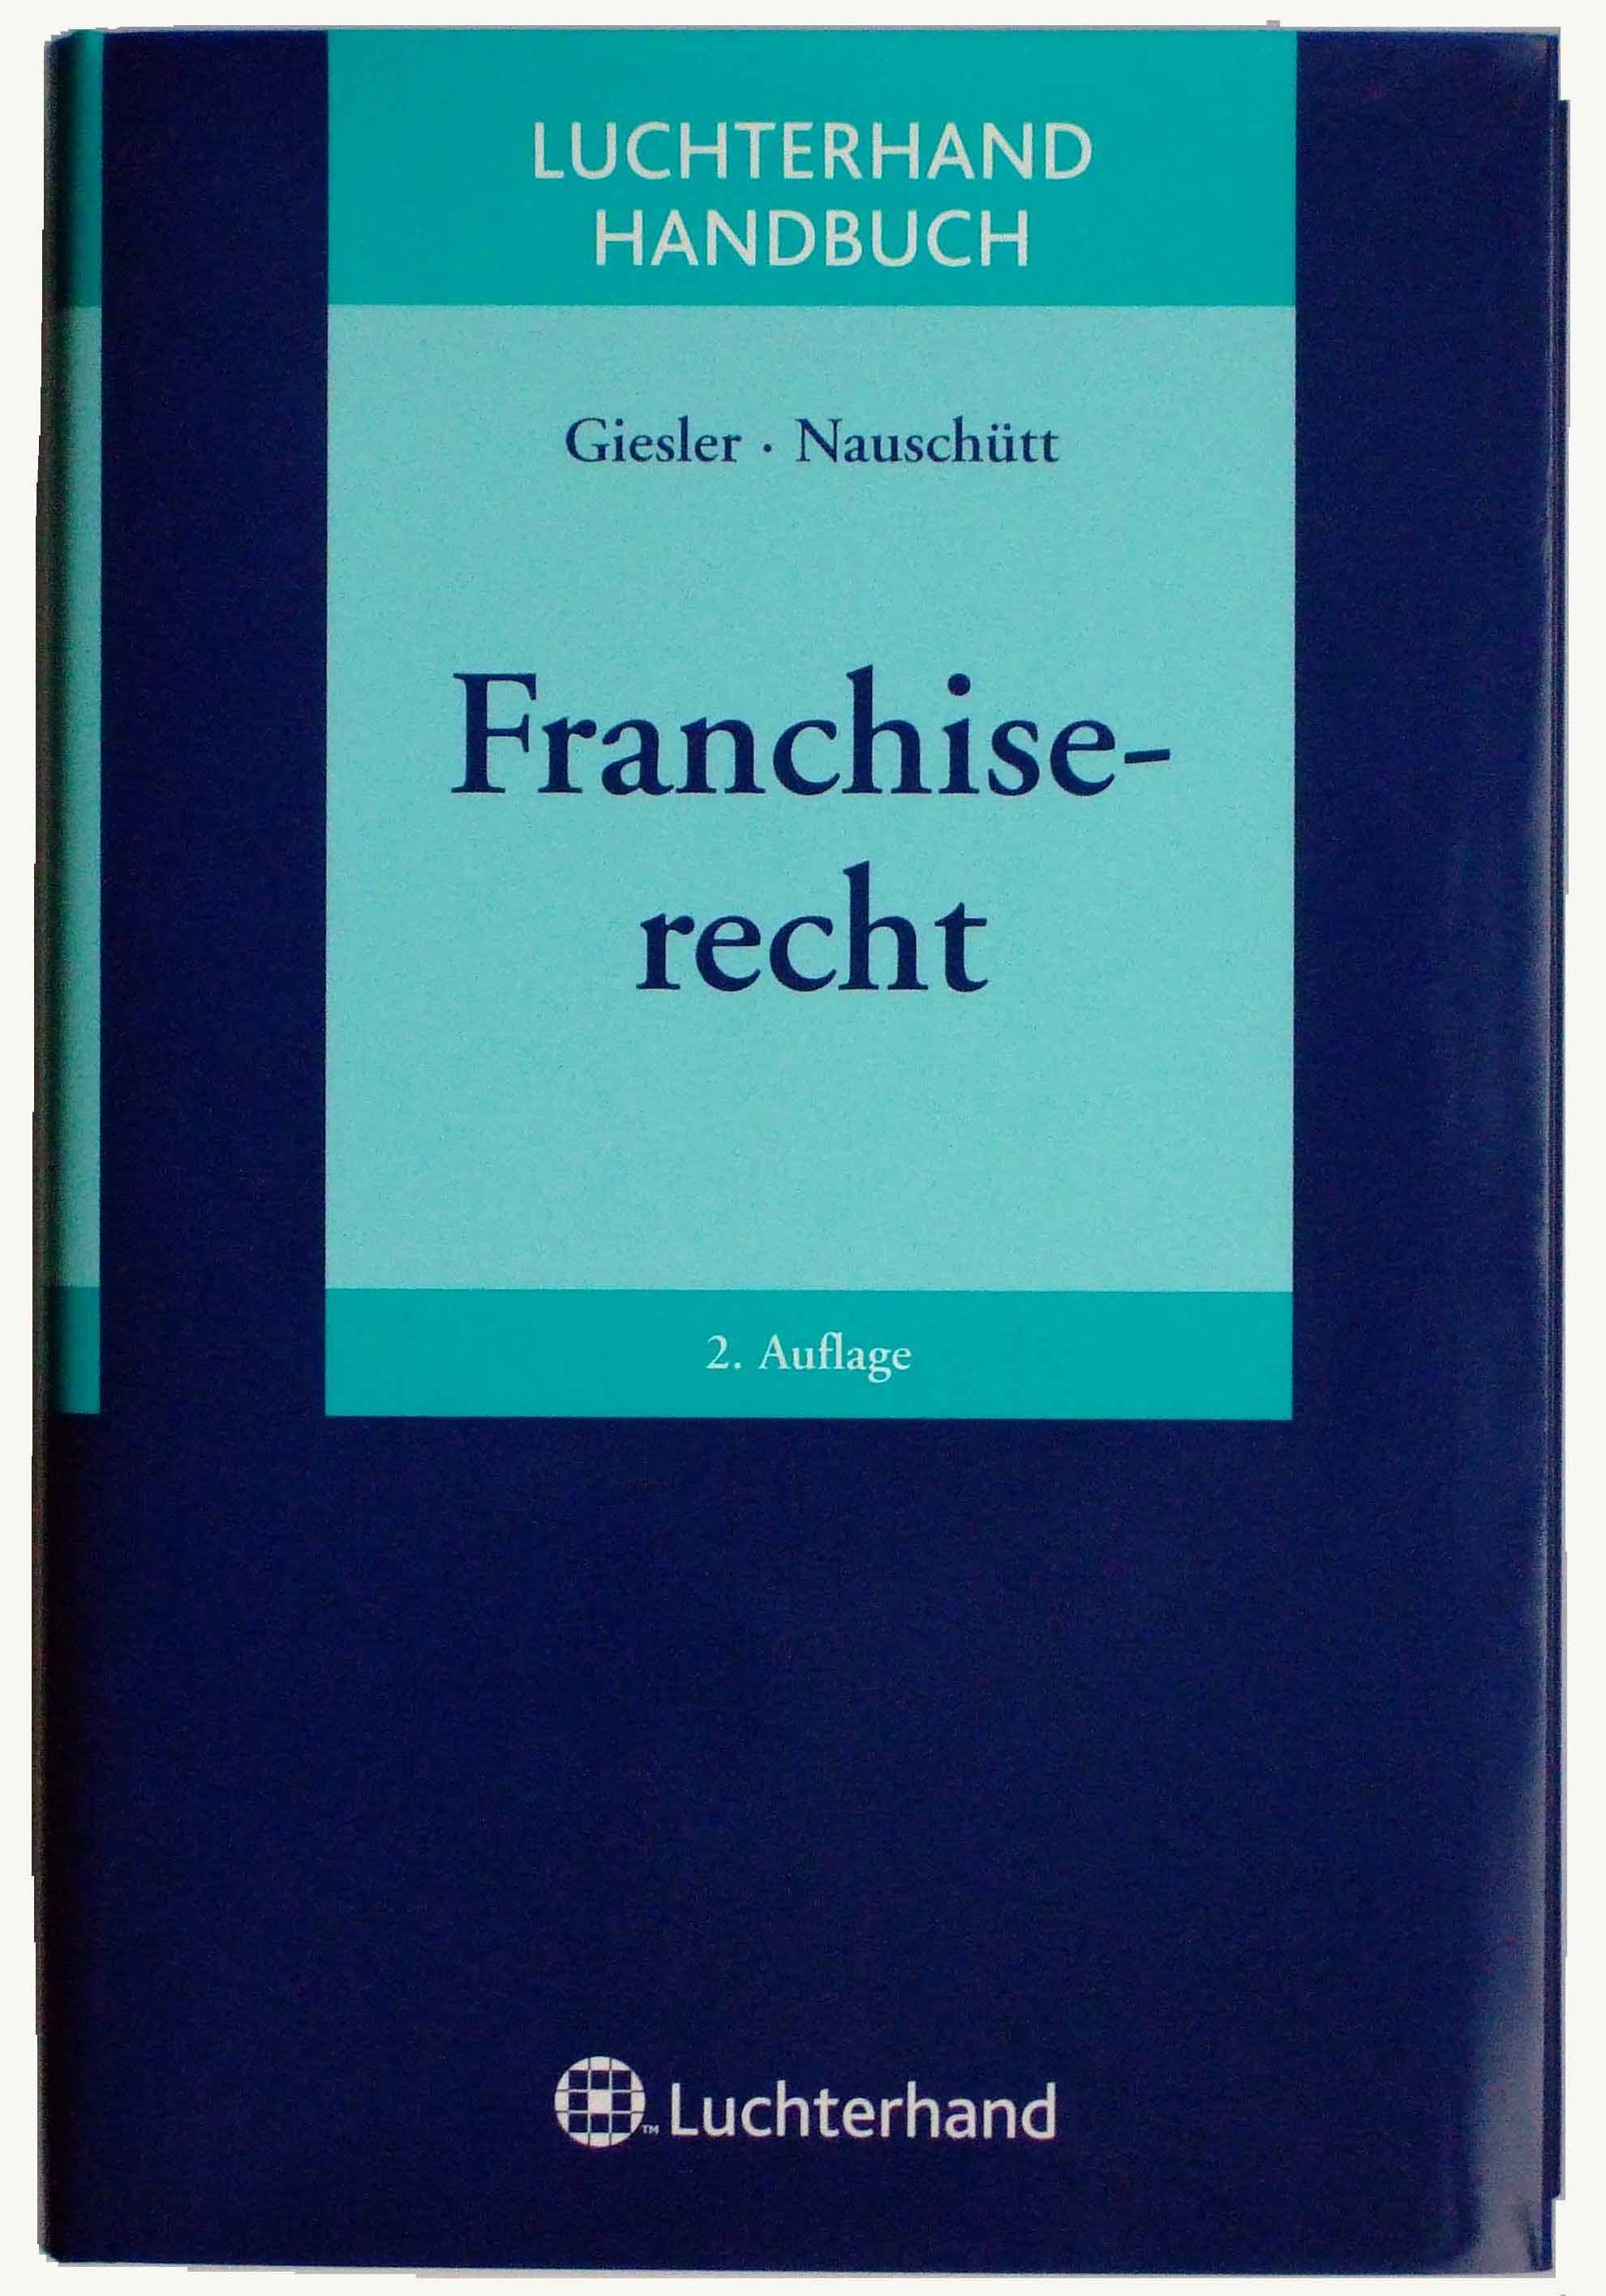 Anthologie Buchwelt 2008